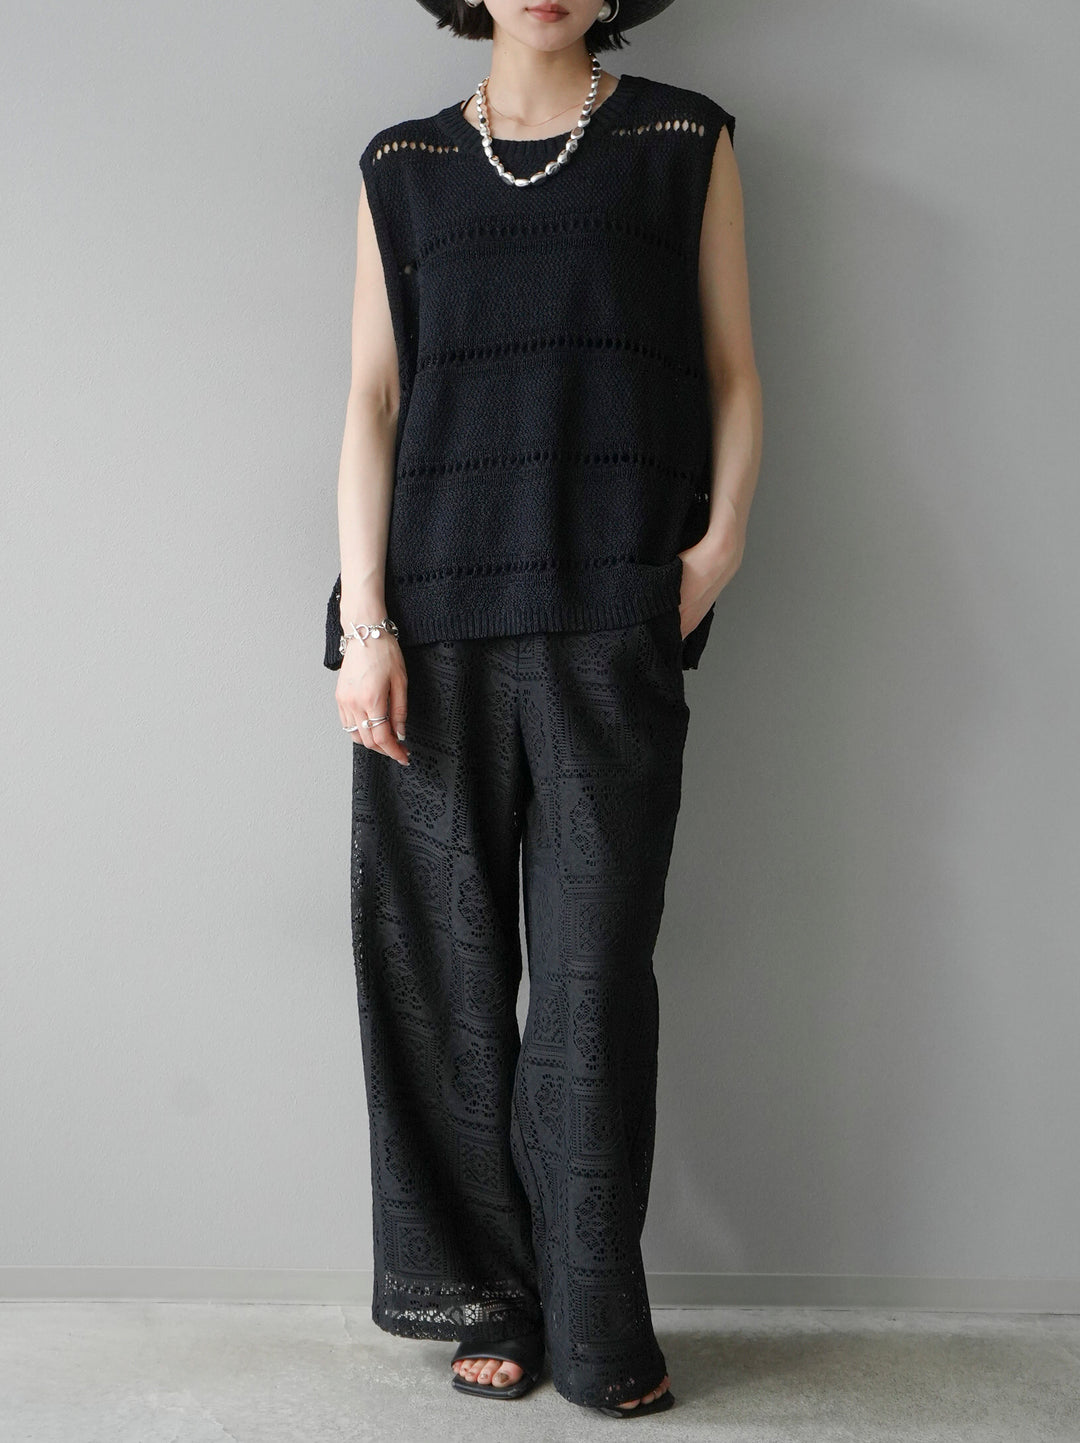 [Pre-order] Sleeveless Summer Knit Pullover/Black